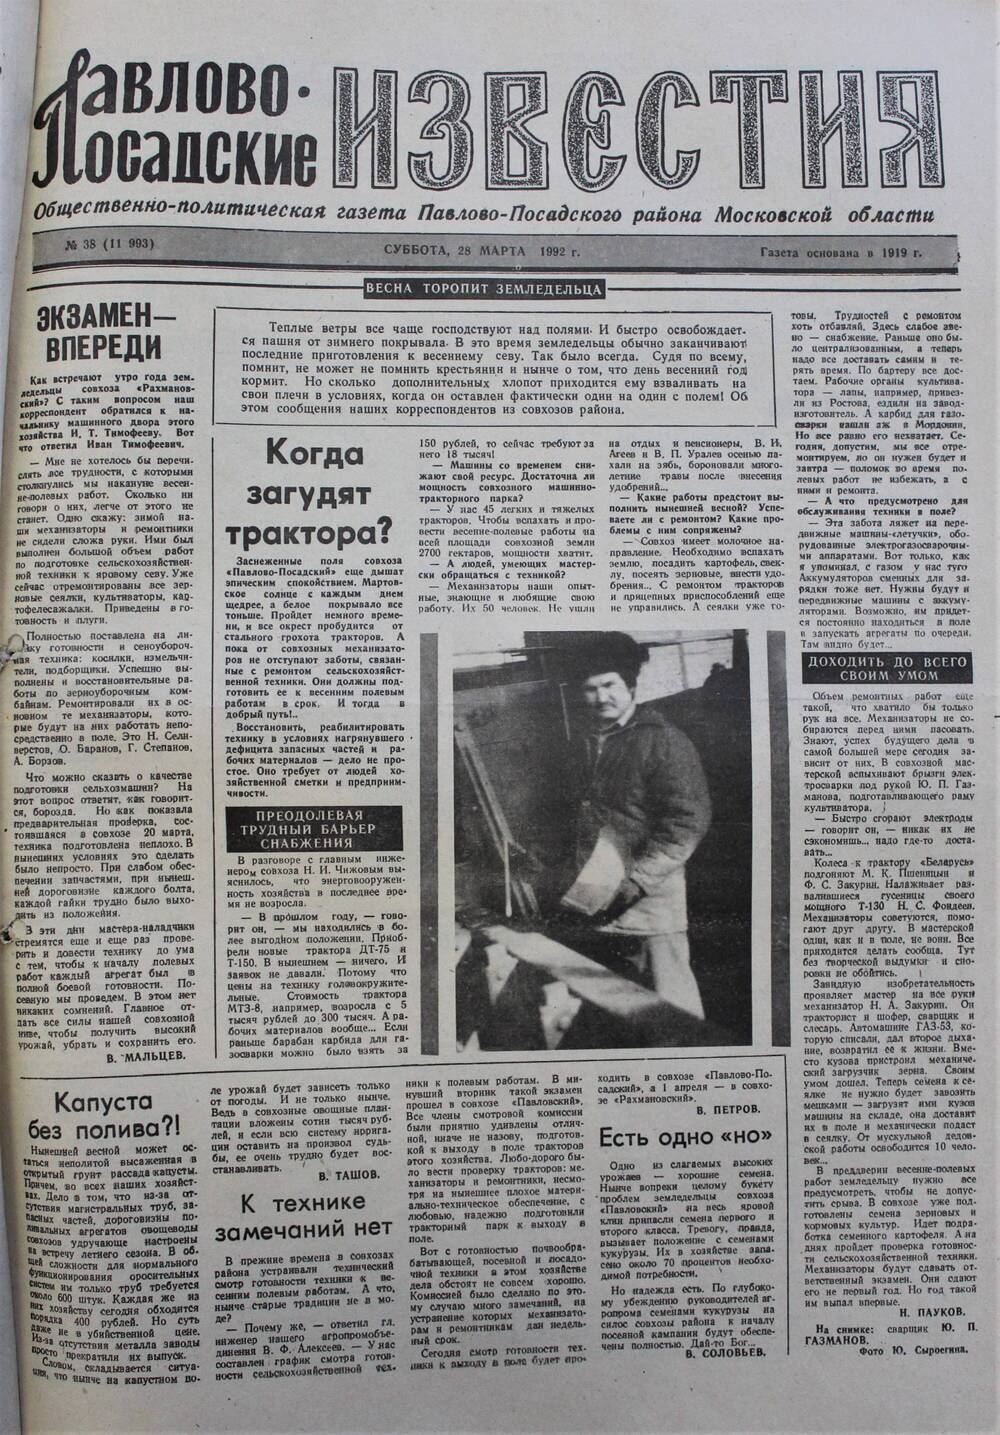 Газета Павлово-Посадские известия № 38 (11993)  от 28 марта 1992 г.